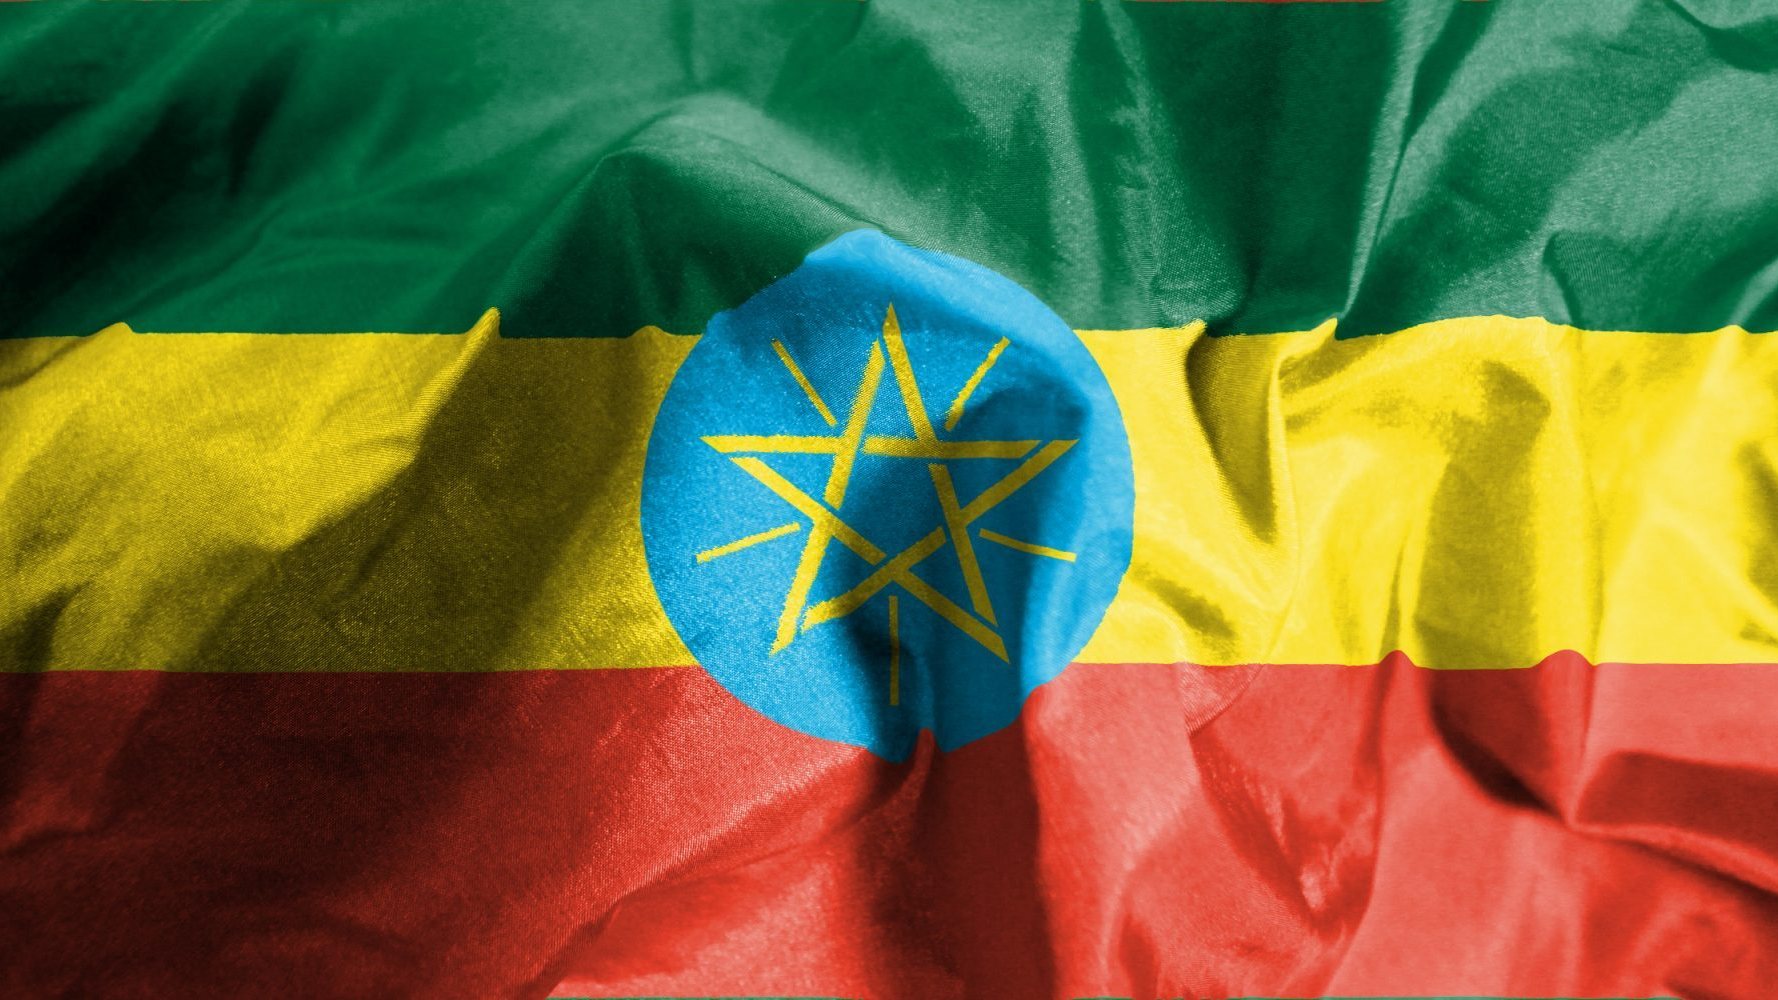 Etiópia vê-se a braços com um conflito na região do Tigray, após as tropas governamentais terem atacado o partido que chefia a região, em novembro de 2020